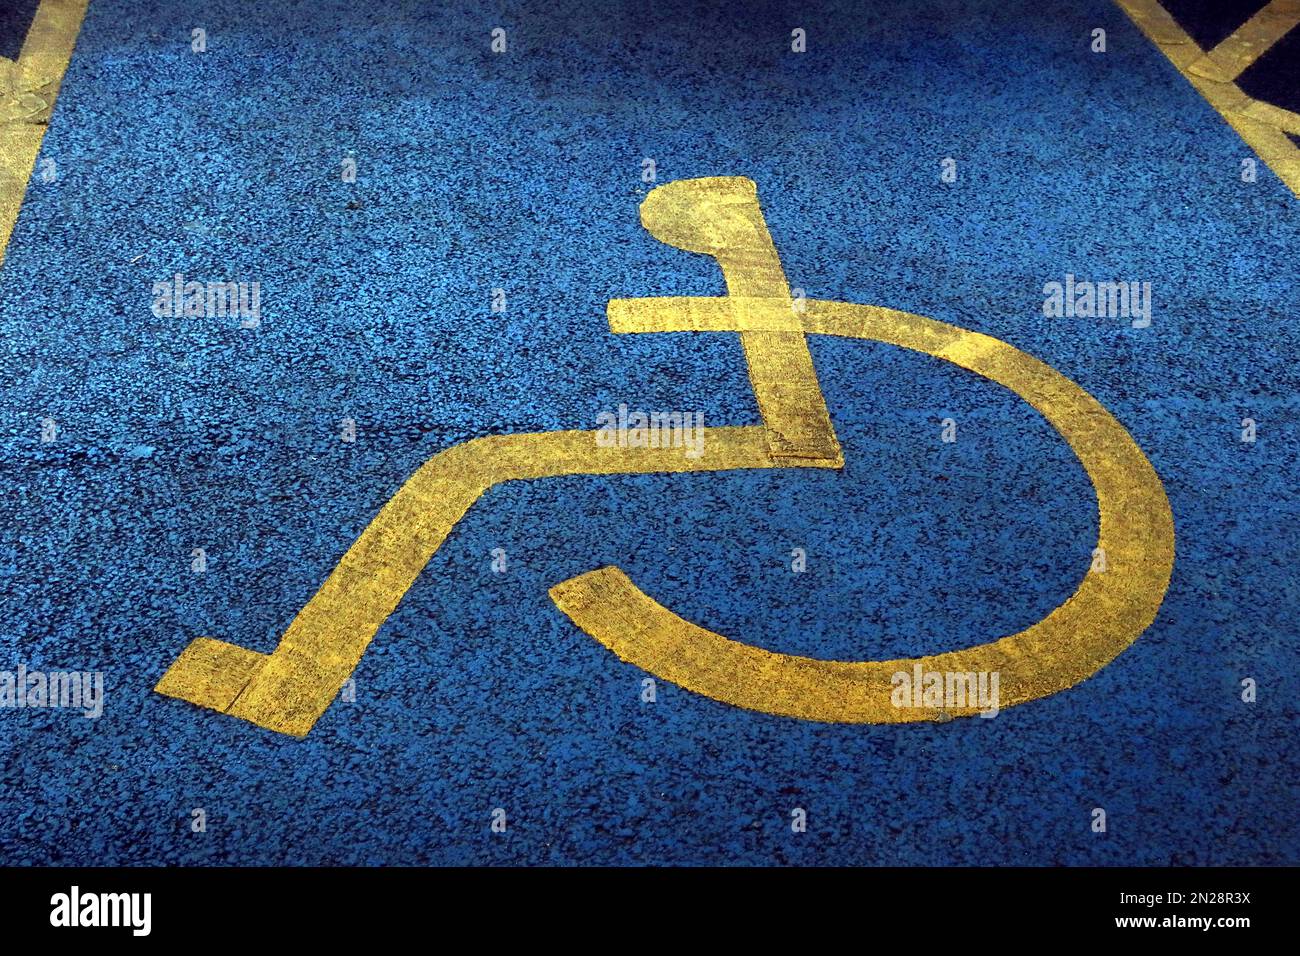 Superficie testurizzata su blu e giallo verniciato, spazio parcheggio per disabili NCP Stockport Foto Stock